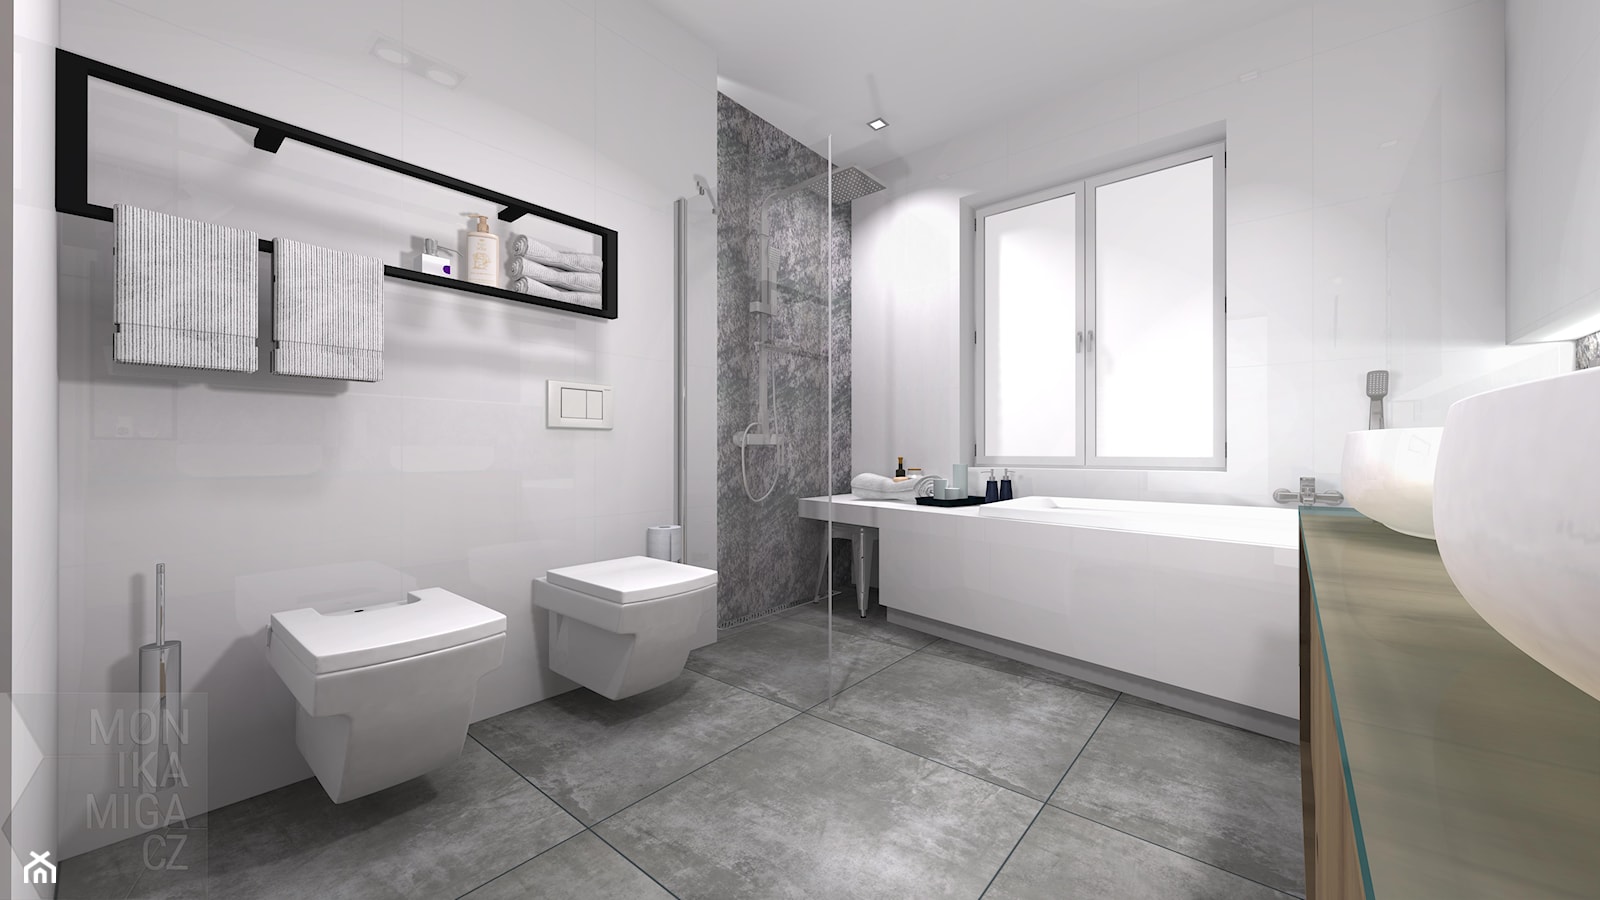 Średnia na poddaszu z dwoma umywalkami łazienka z oknem, styl industrialny - zdjęcie od M3 MONIKA MIGACZ - Homebook